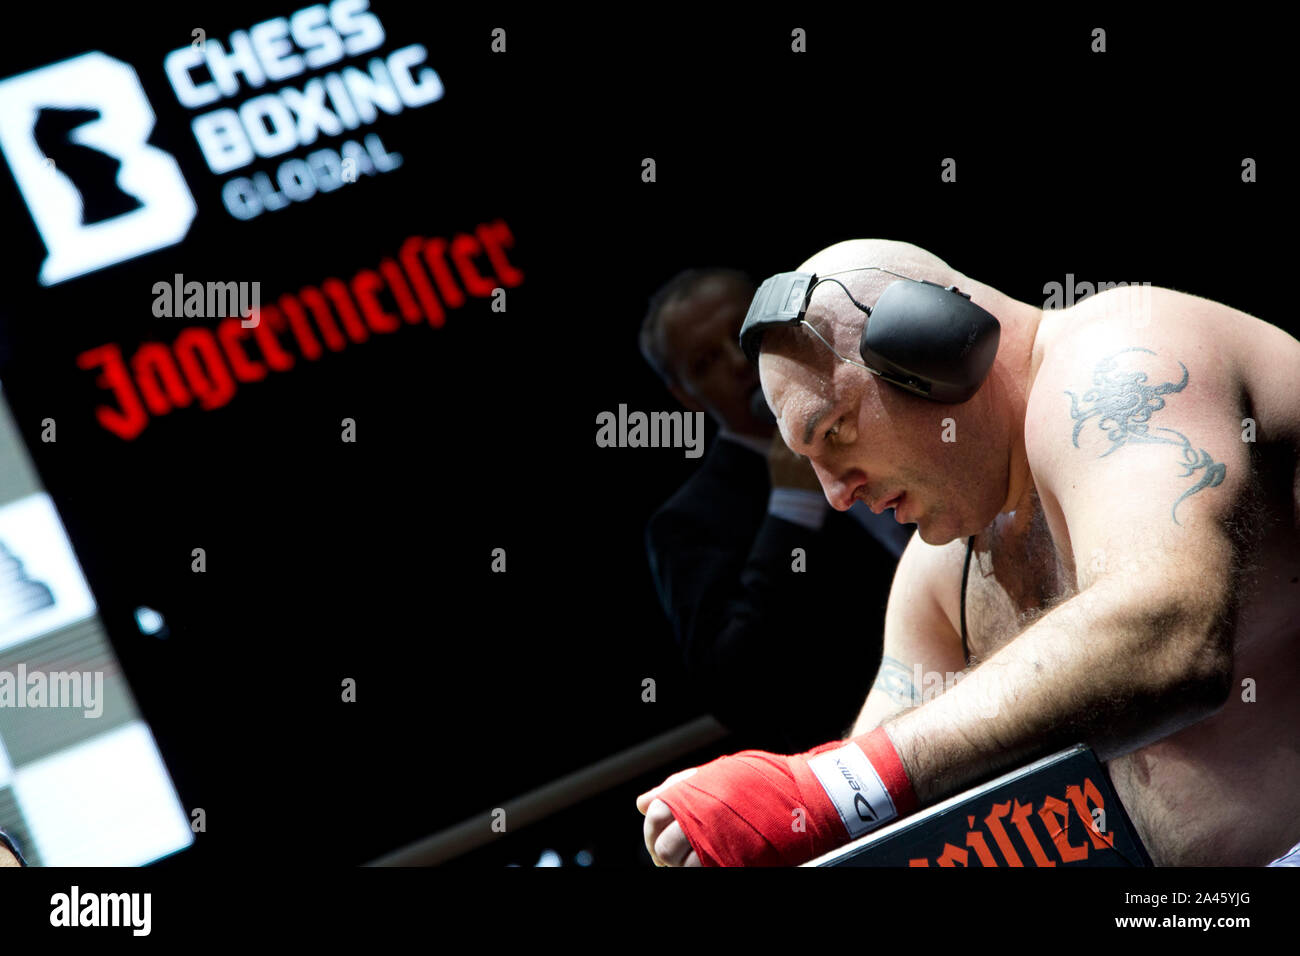 Moskau, Russland. 28 November, 2013 Italienische boxer Gianluca Sirci in einem Match gegen russische Athleten Nikolai Sazhin im World Chess Boxing Meisterschaft in Moskau, Russland Stockfoto